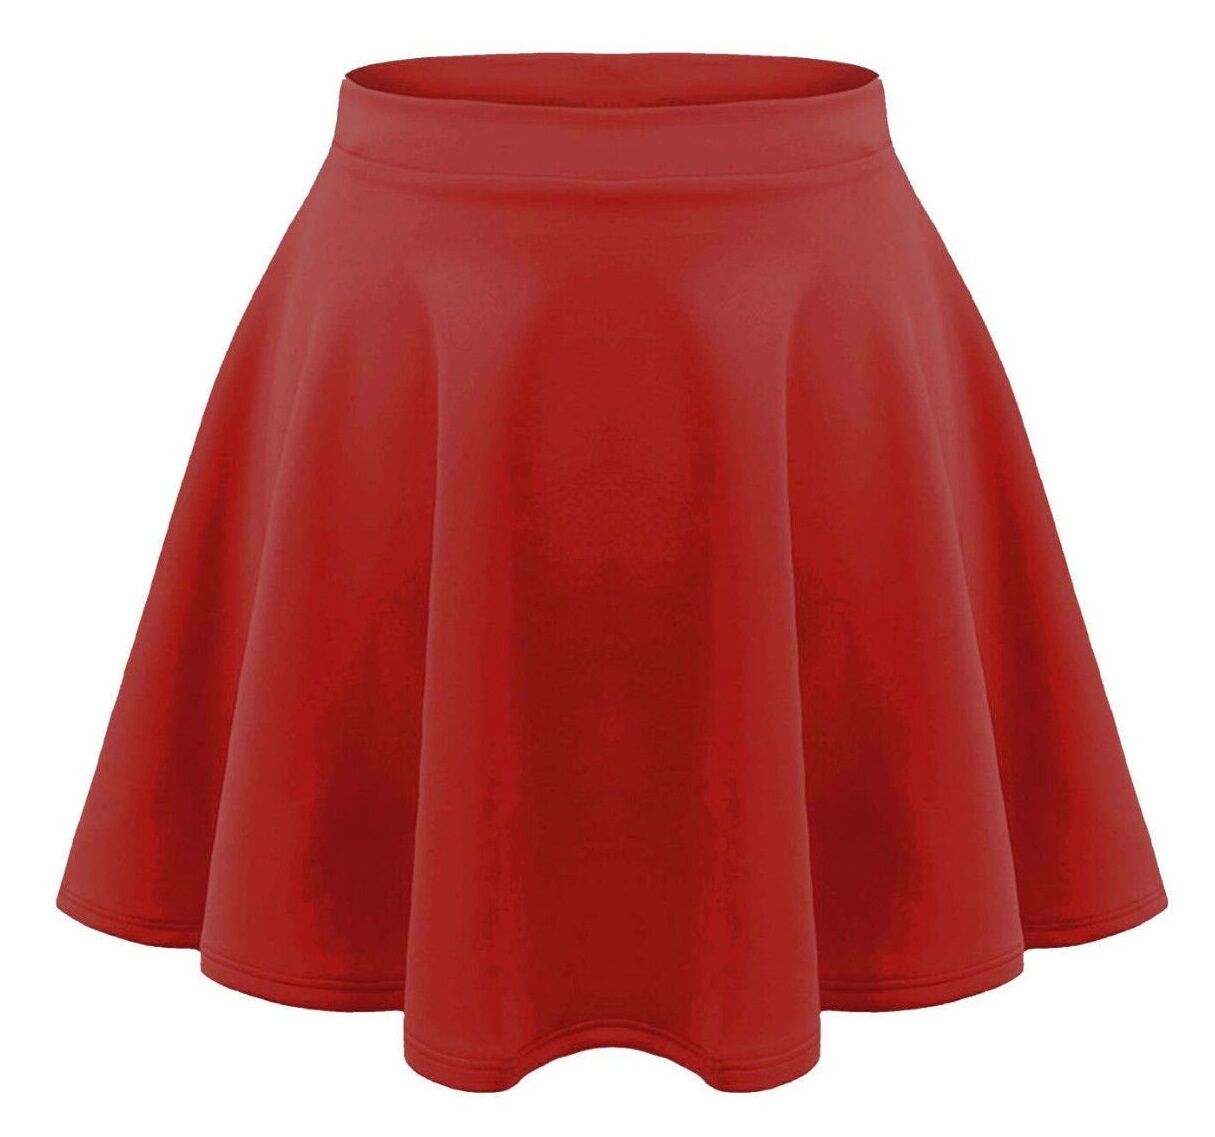 Girls Plain Red Skater Skirt.